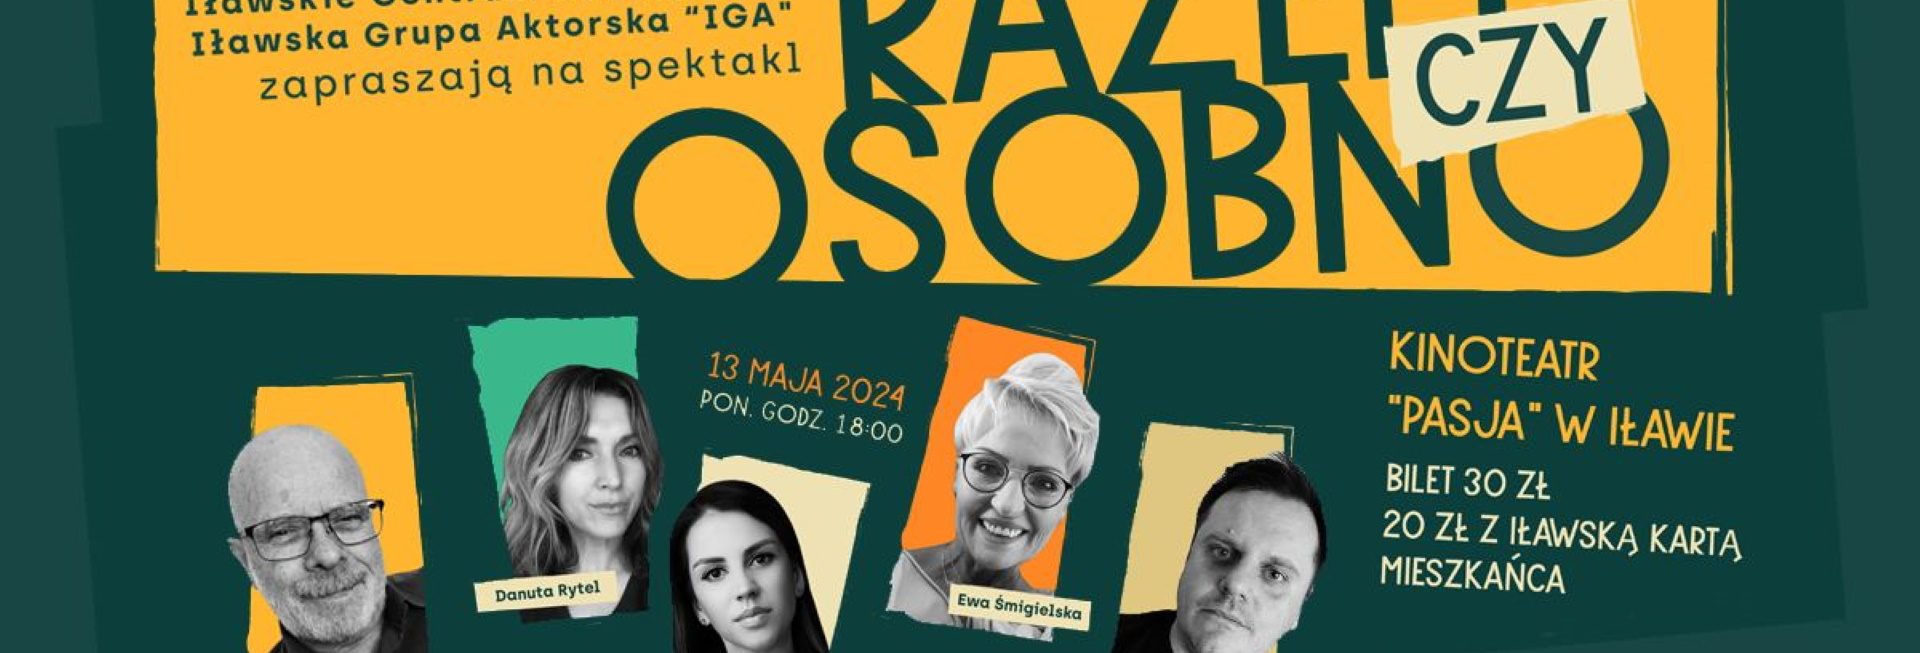 Plakat zapraszający w poniedziałek 13 maja 2024 r. do Iławy na premierę spektaklu: "Razem, czy osobno" Iławskiej Grupy Aktorskiej Iława 2024.